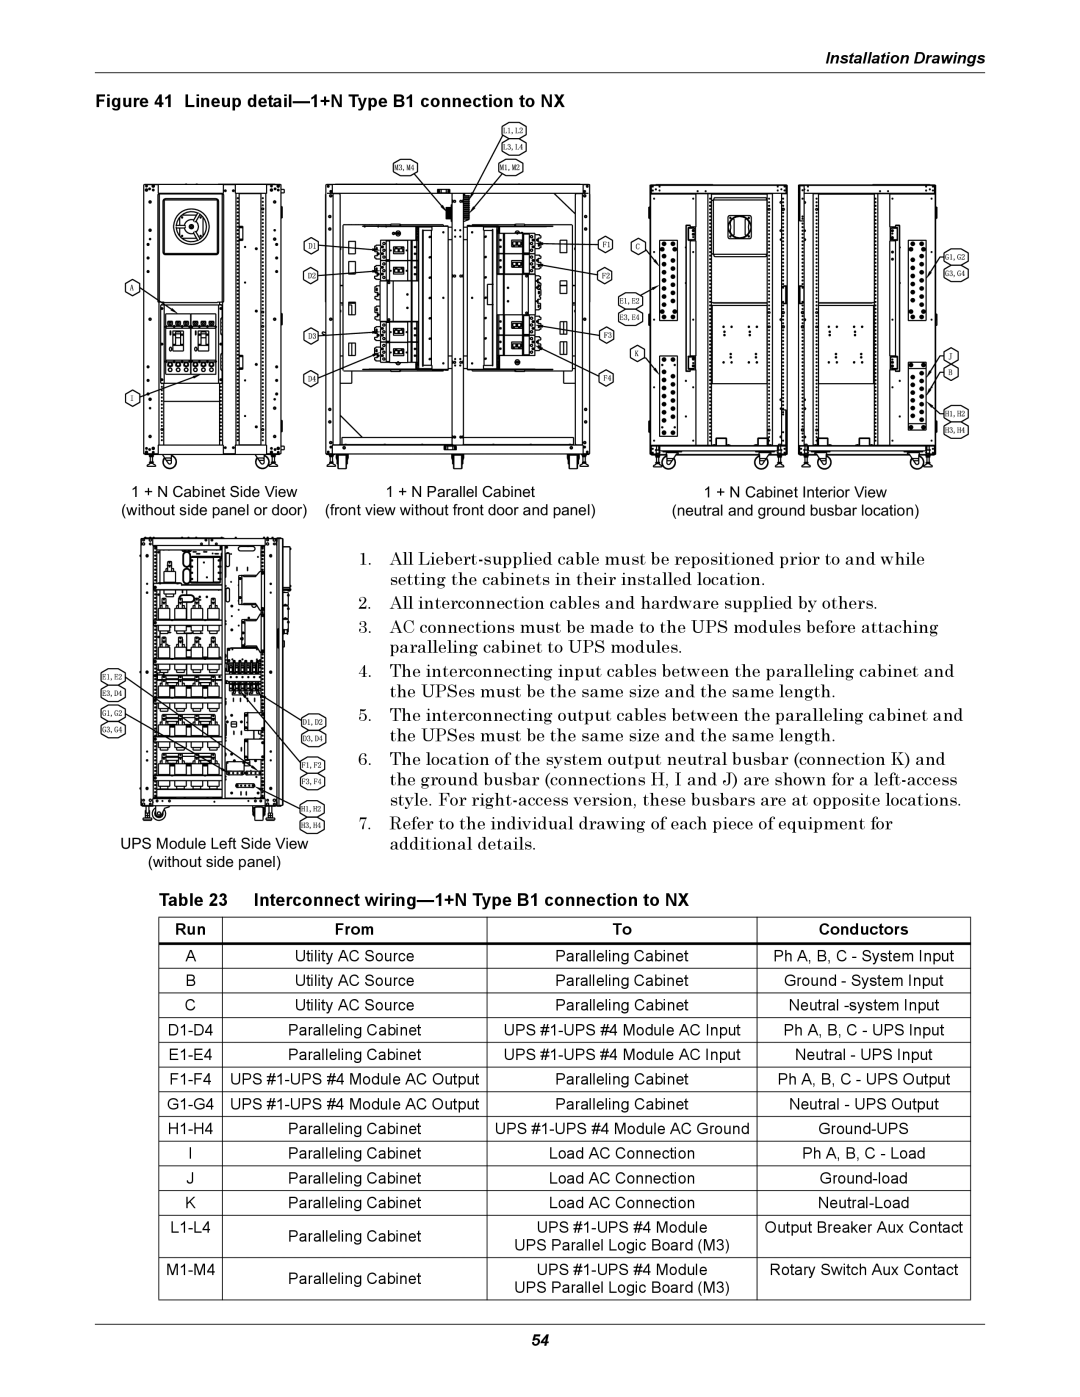 Emerson 10-30kVA, 208V installation manual Installation Drawings 